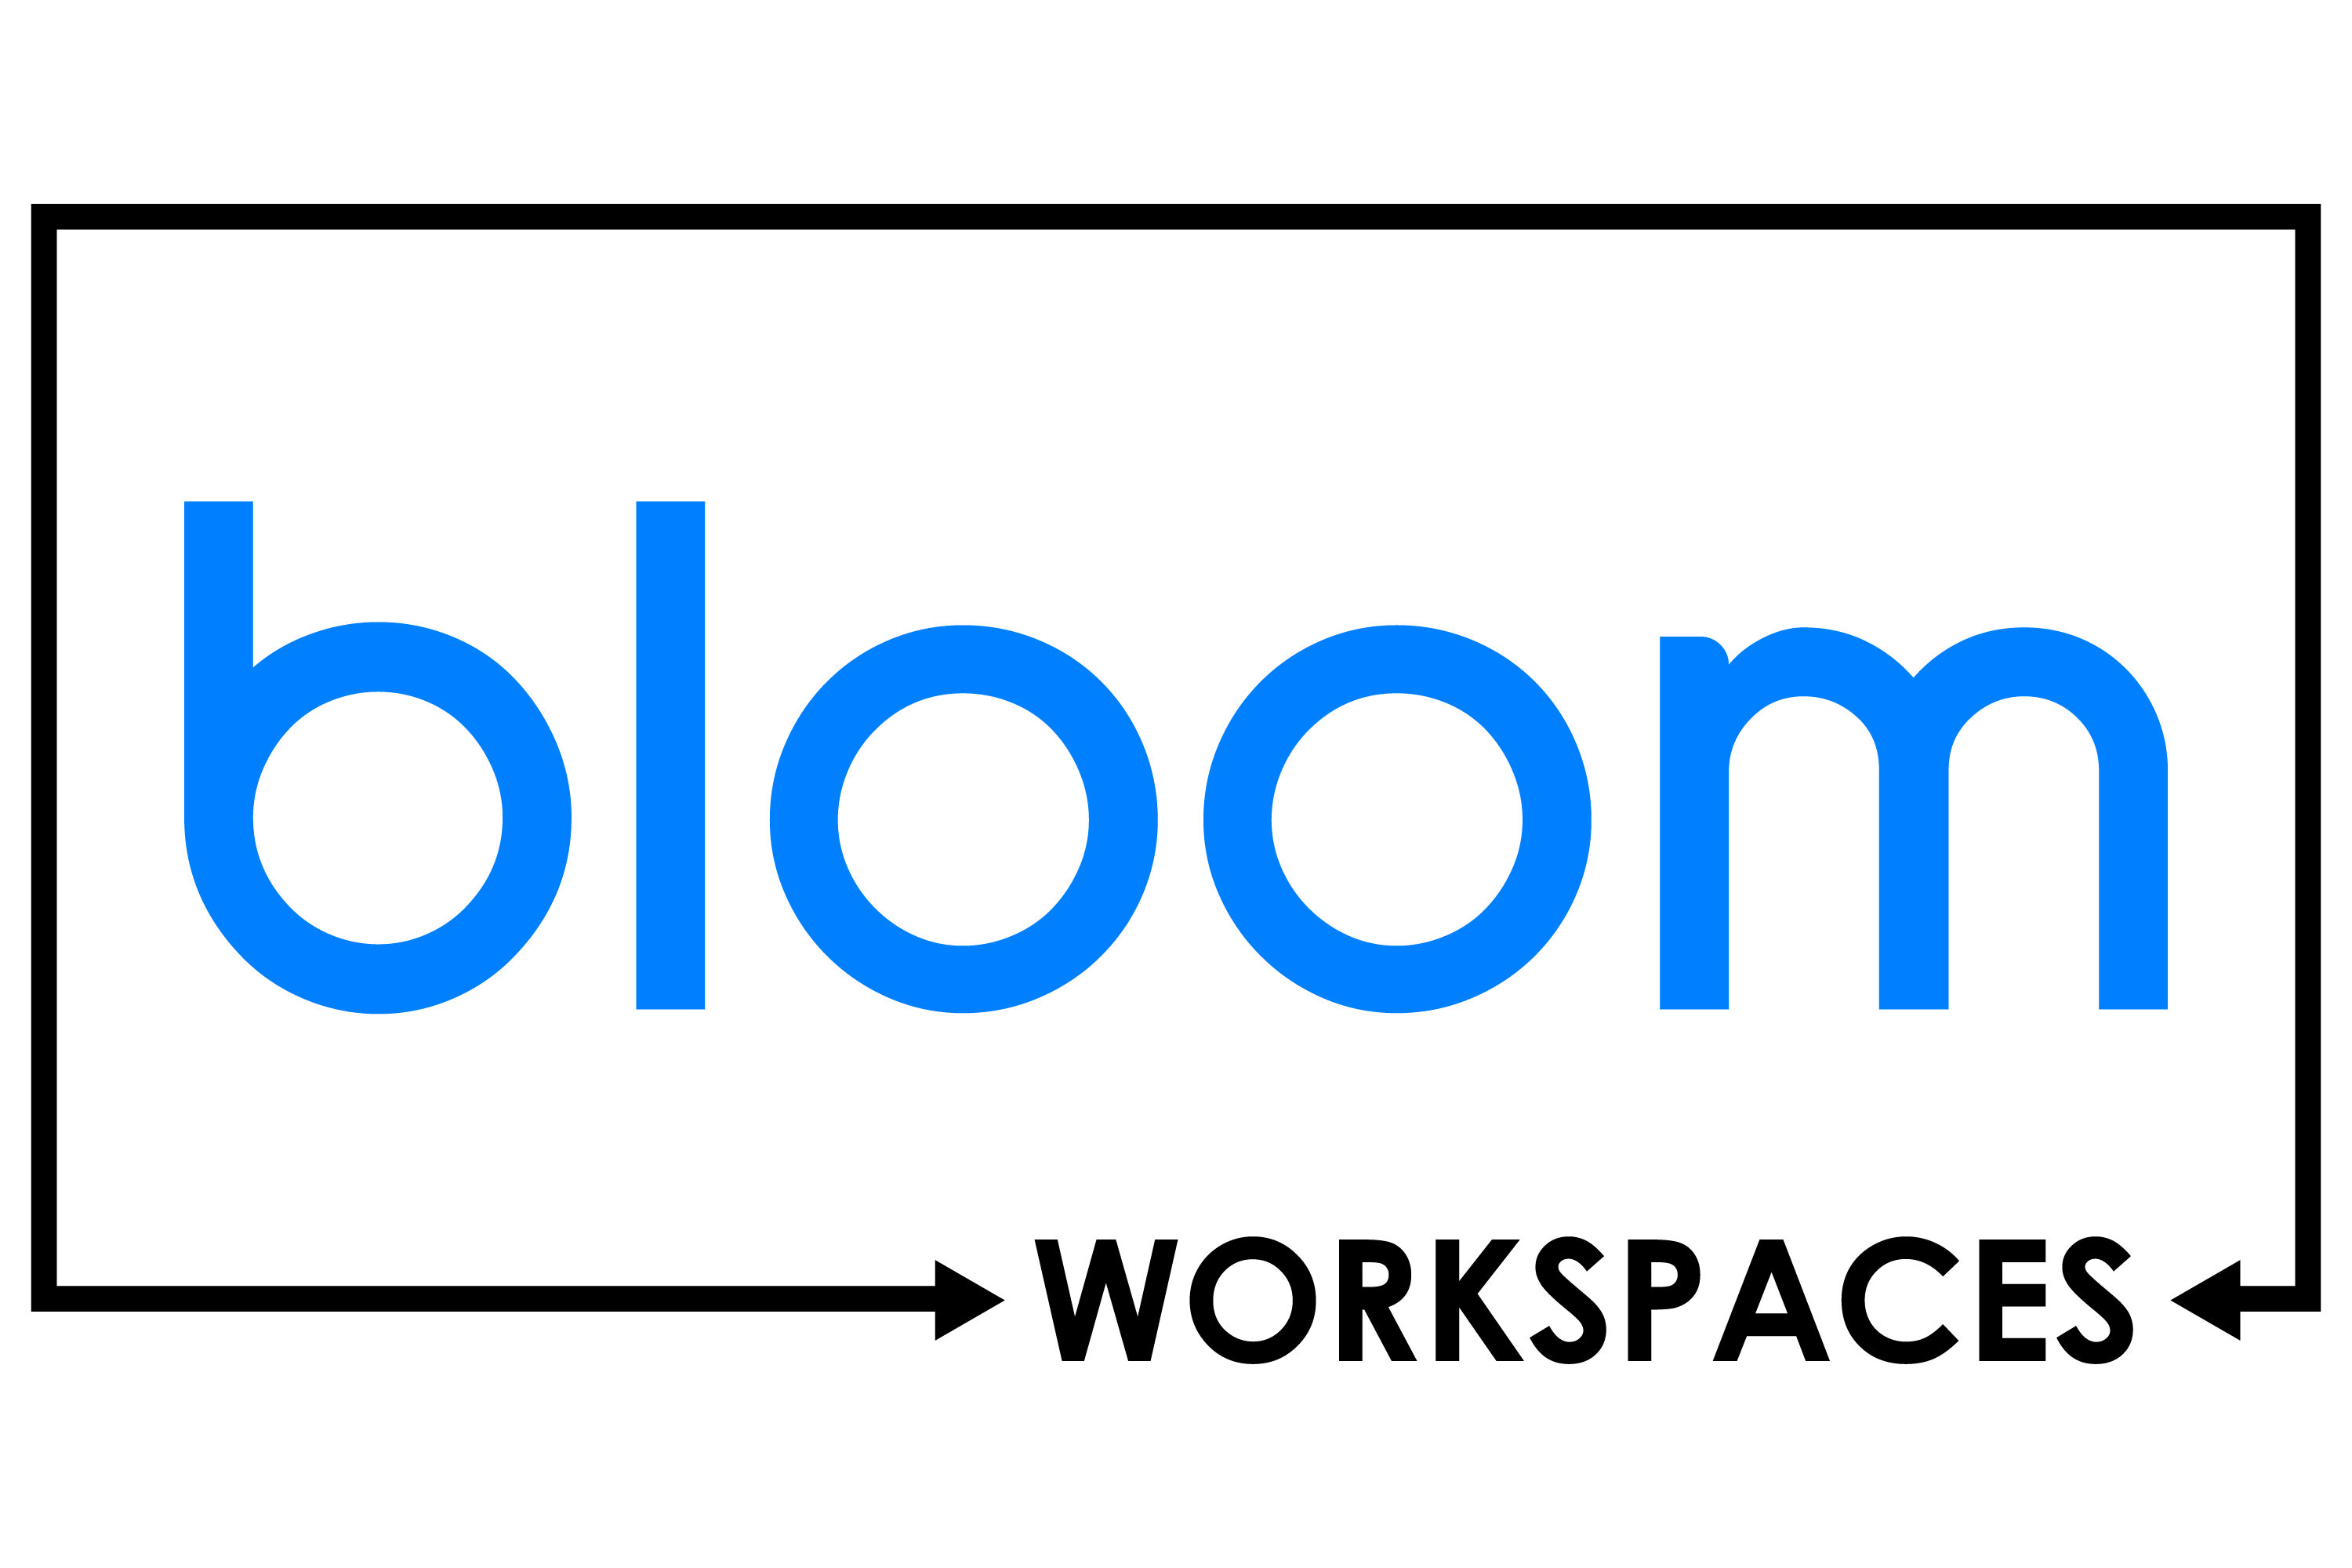 Bloom Workspaces